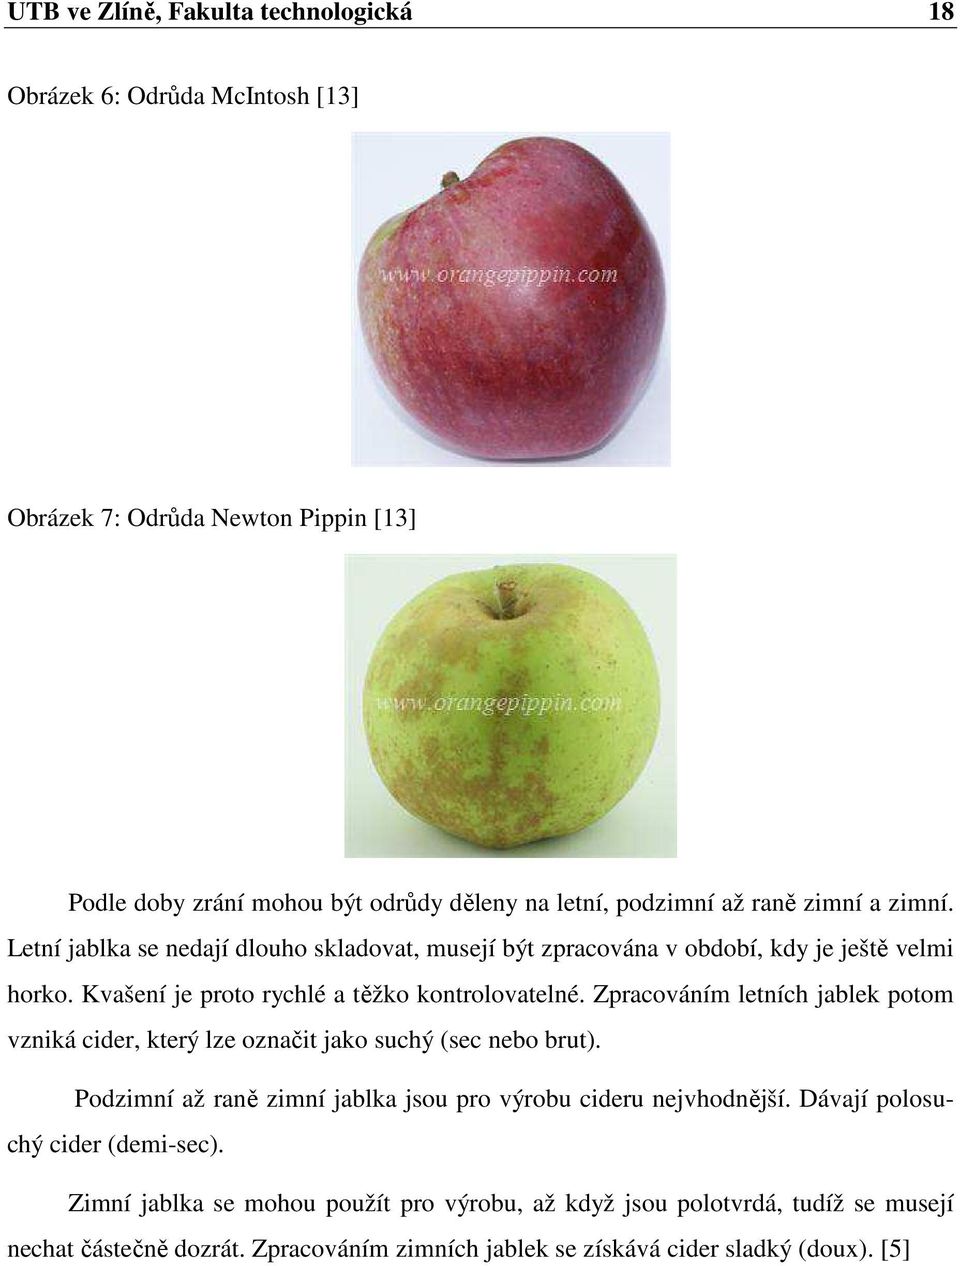 Zpracováním letních jablek potom vzniká cider, který lze označit jako suchý (sec nebo brut). Podzimní až raně zimní jablka jsou pro výrobu cideru nejvhodnější.